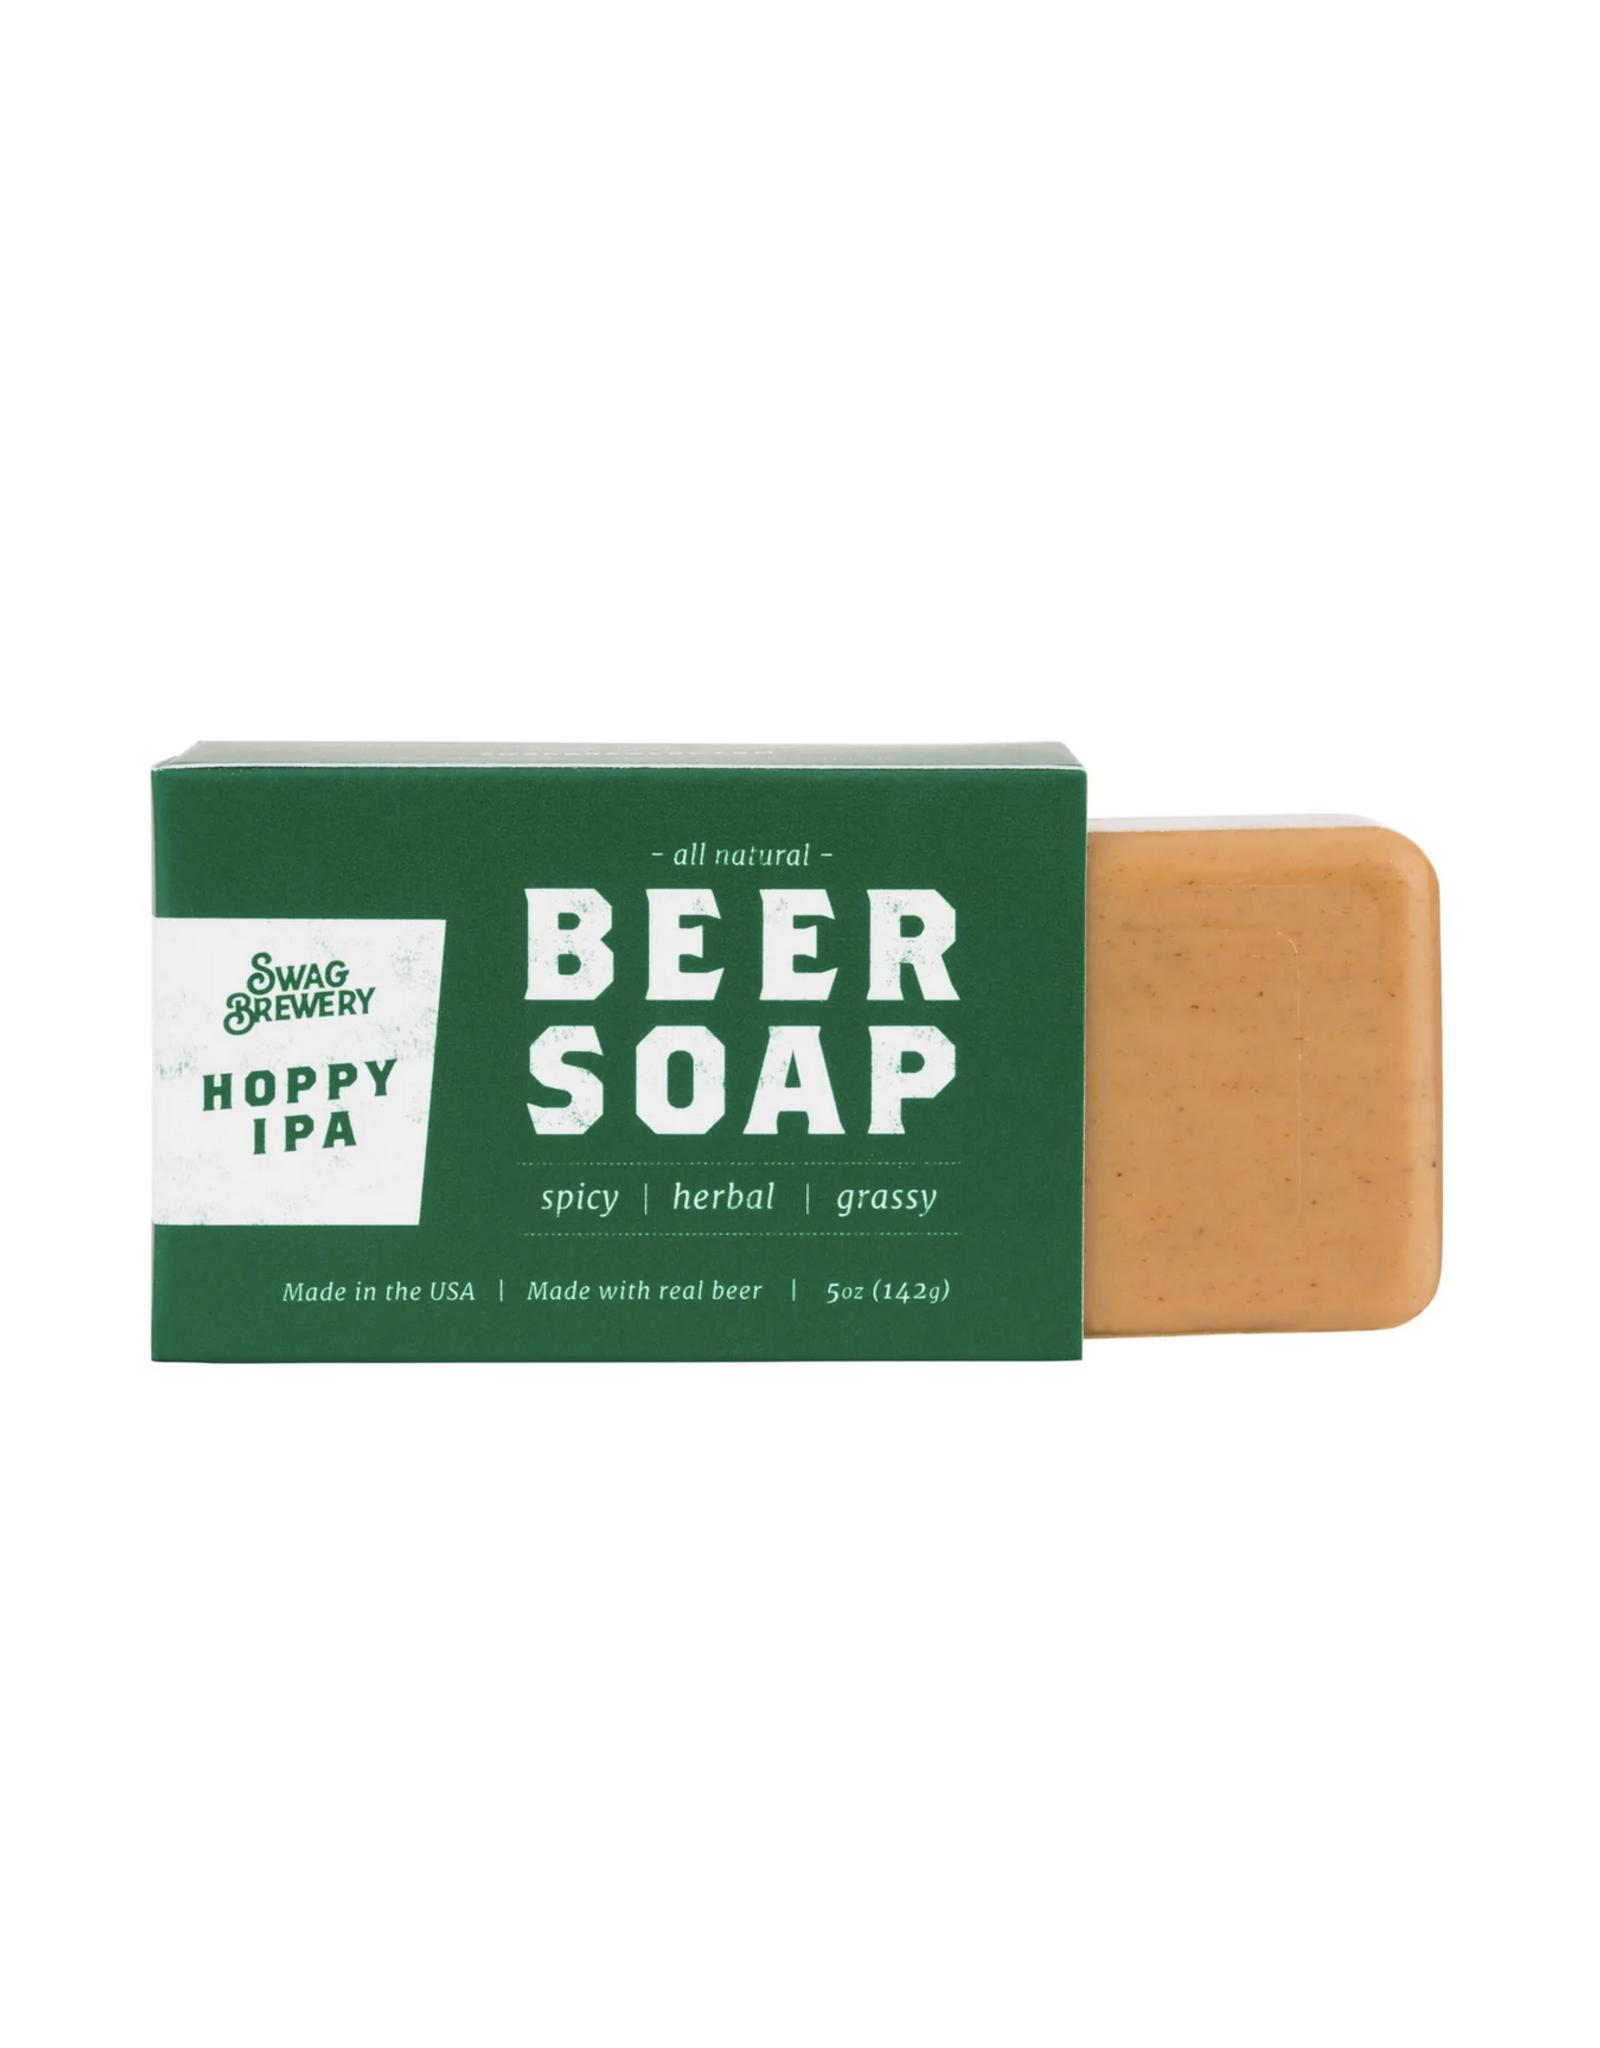 Hoppy IPA Beer Soap Bar